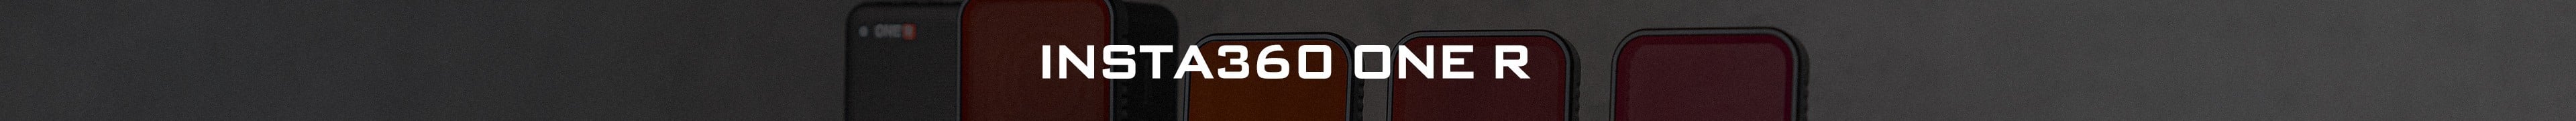 Filtros Insta360 One R: ND, ND/PL - Wide, 360, edição de 1 polegada